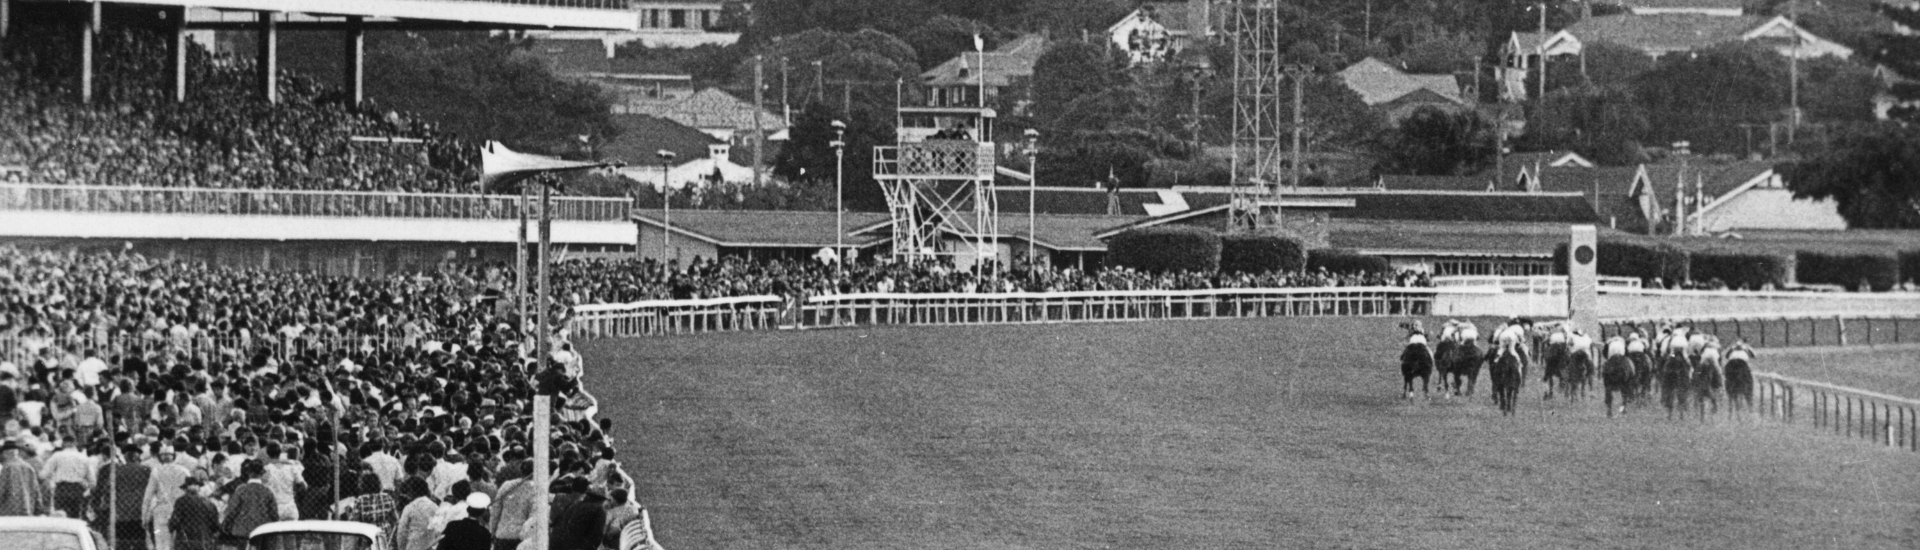 Eagle Farm History | Brisbane Racing Club 